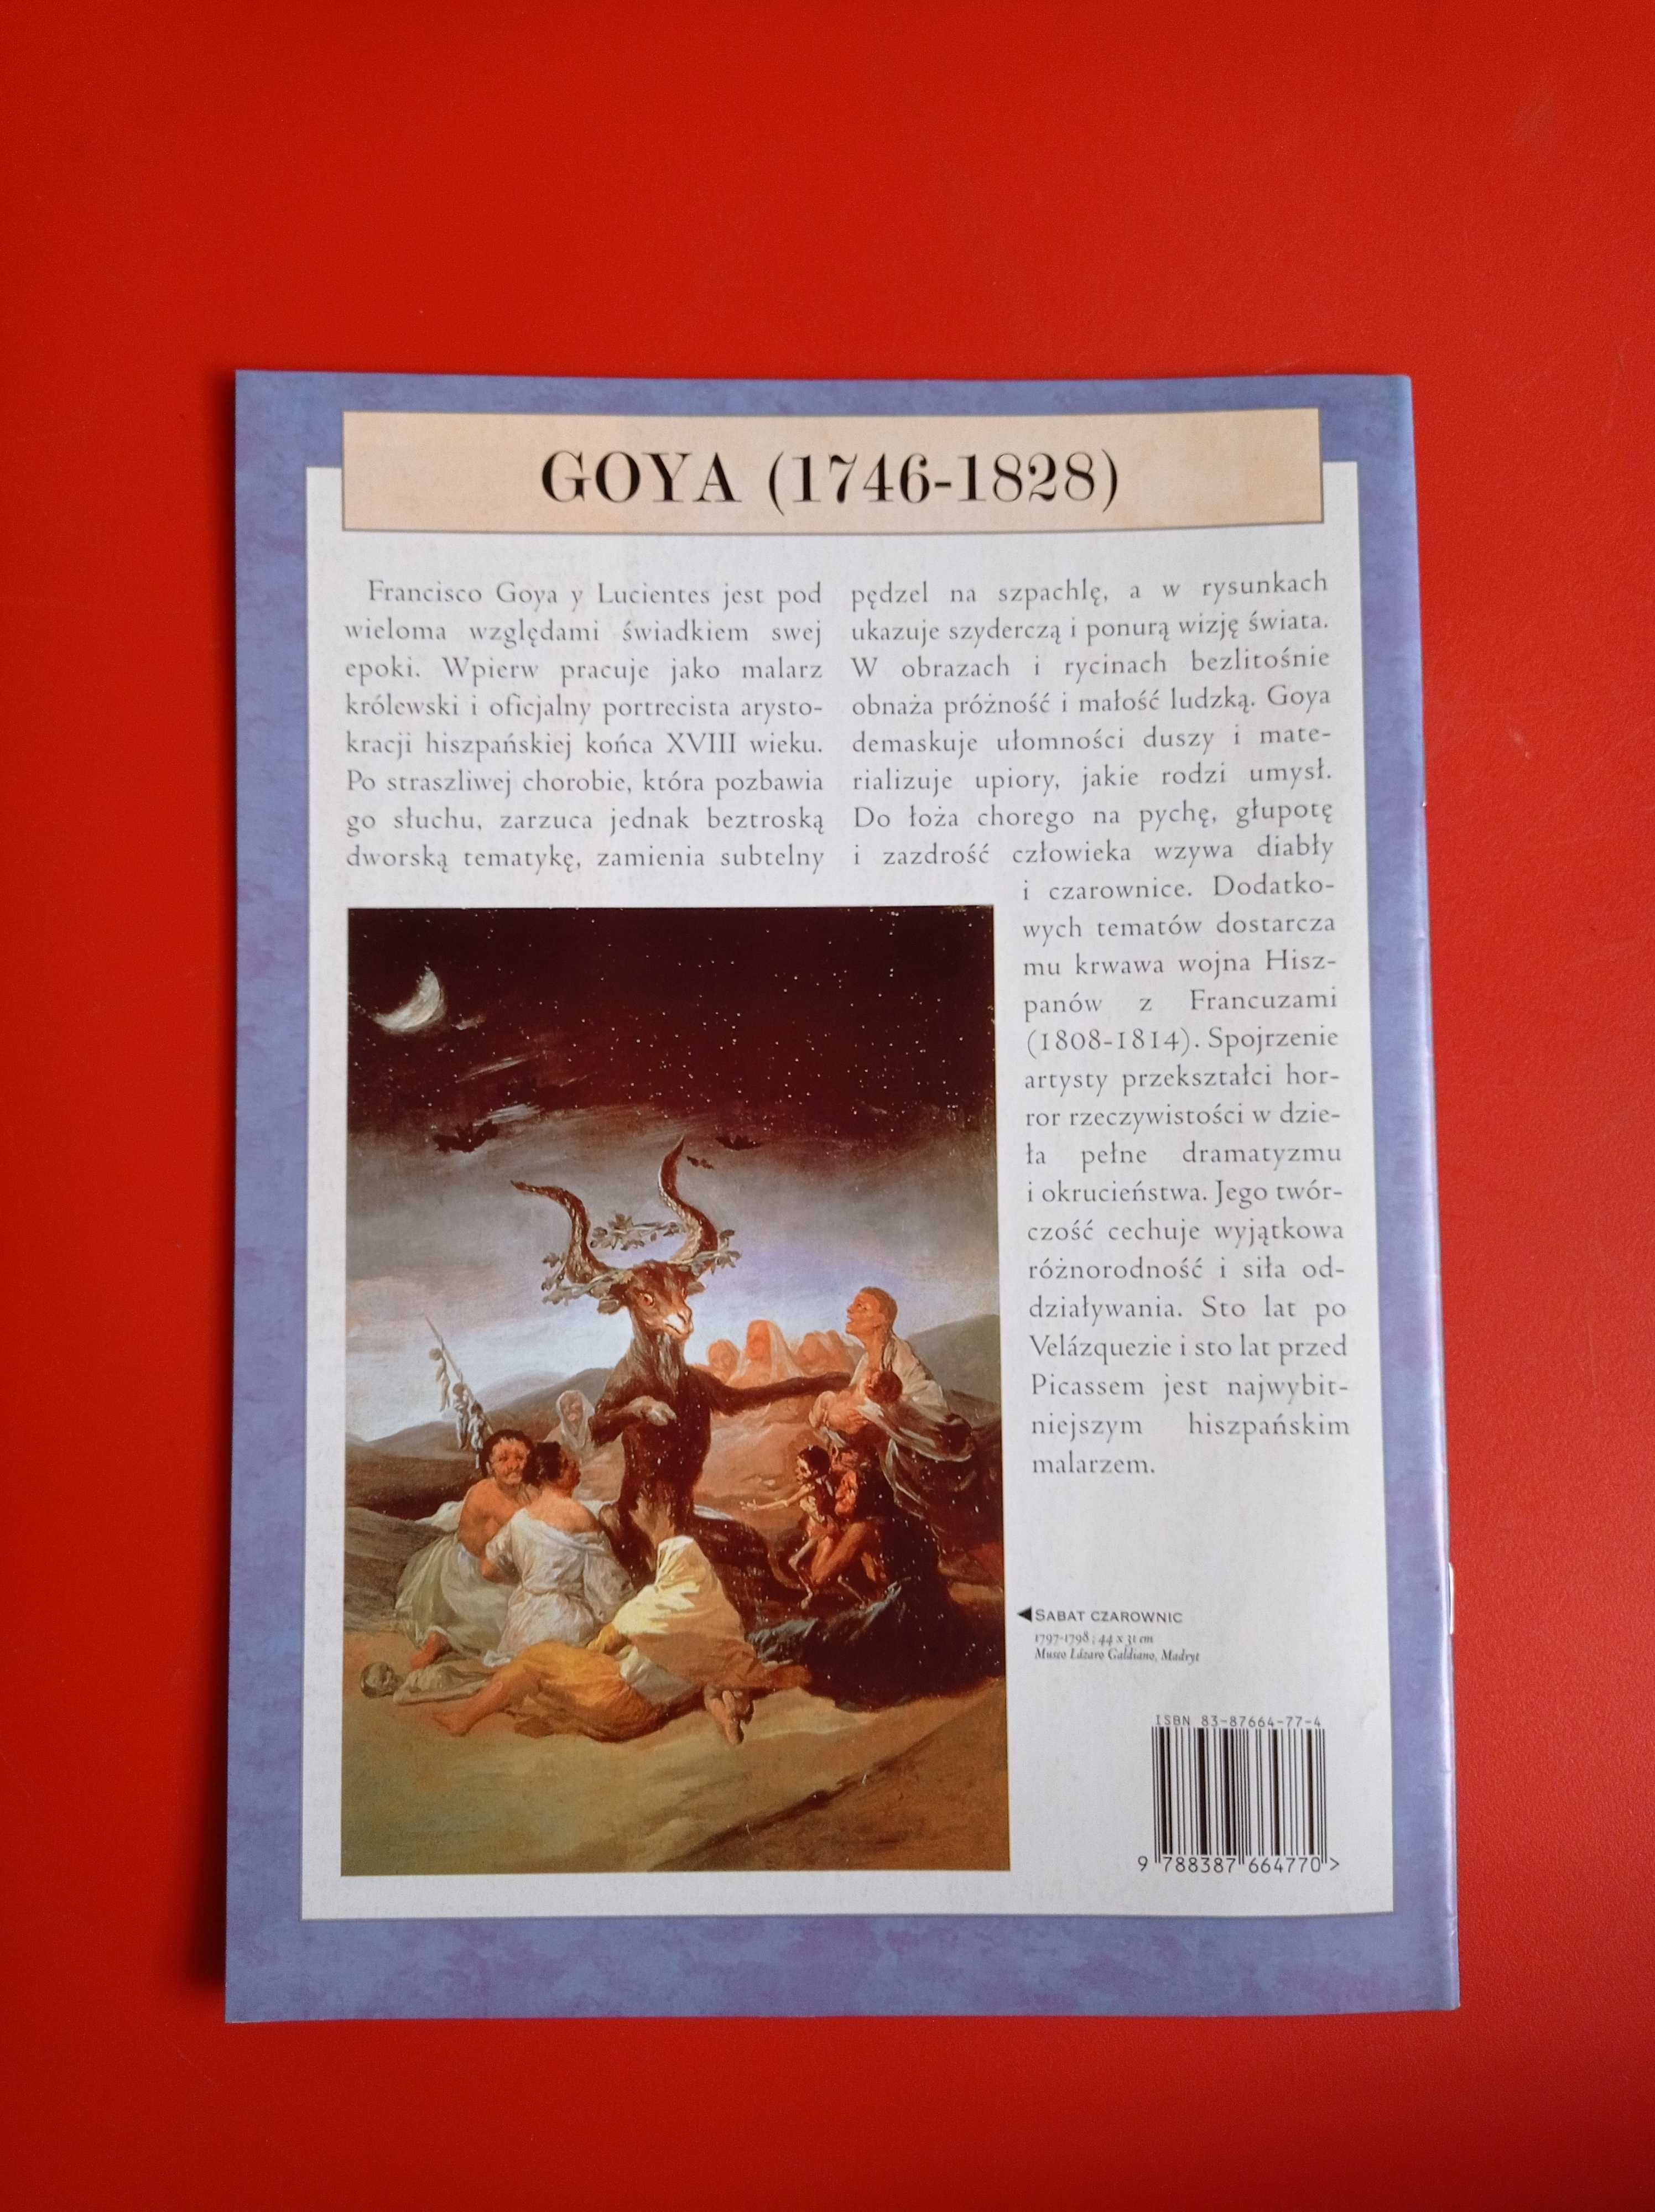 Wielcy malarze nr 77, Francisco Goya